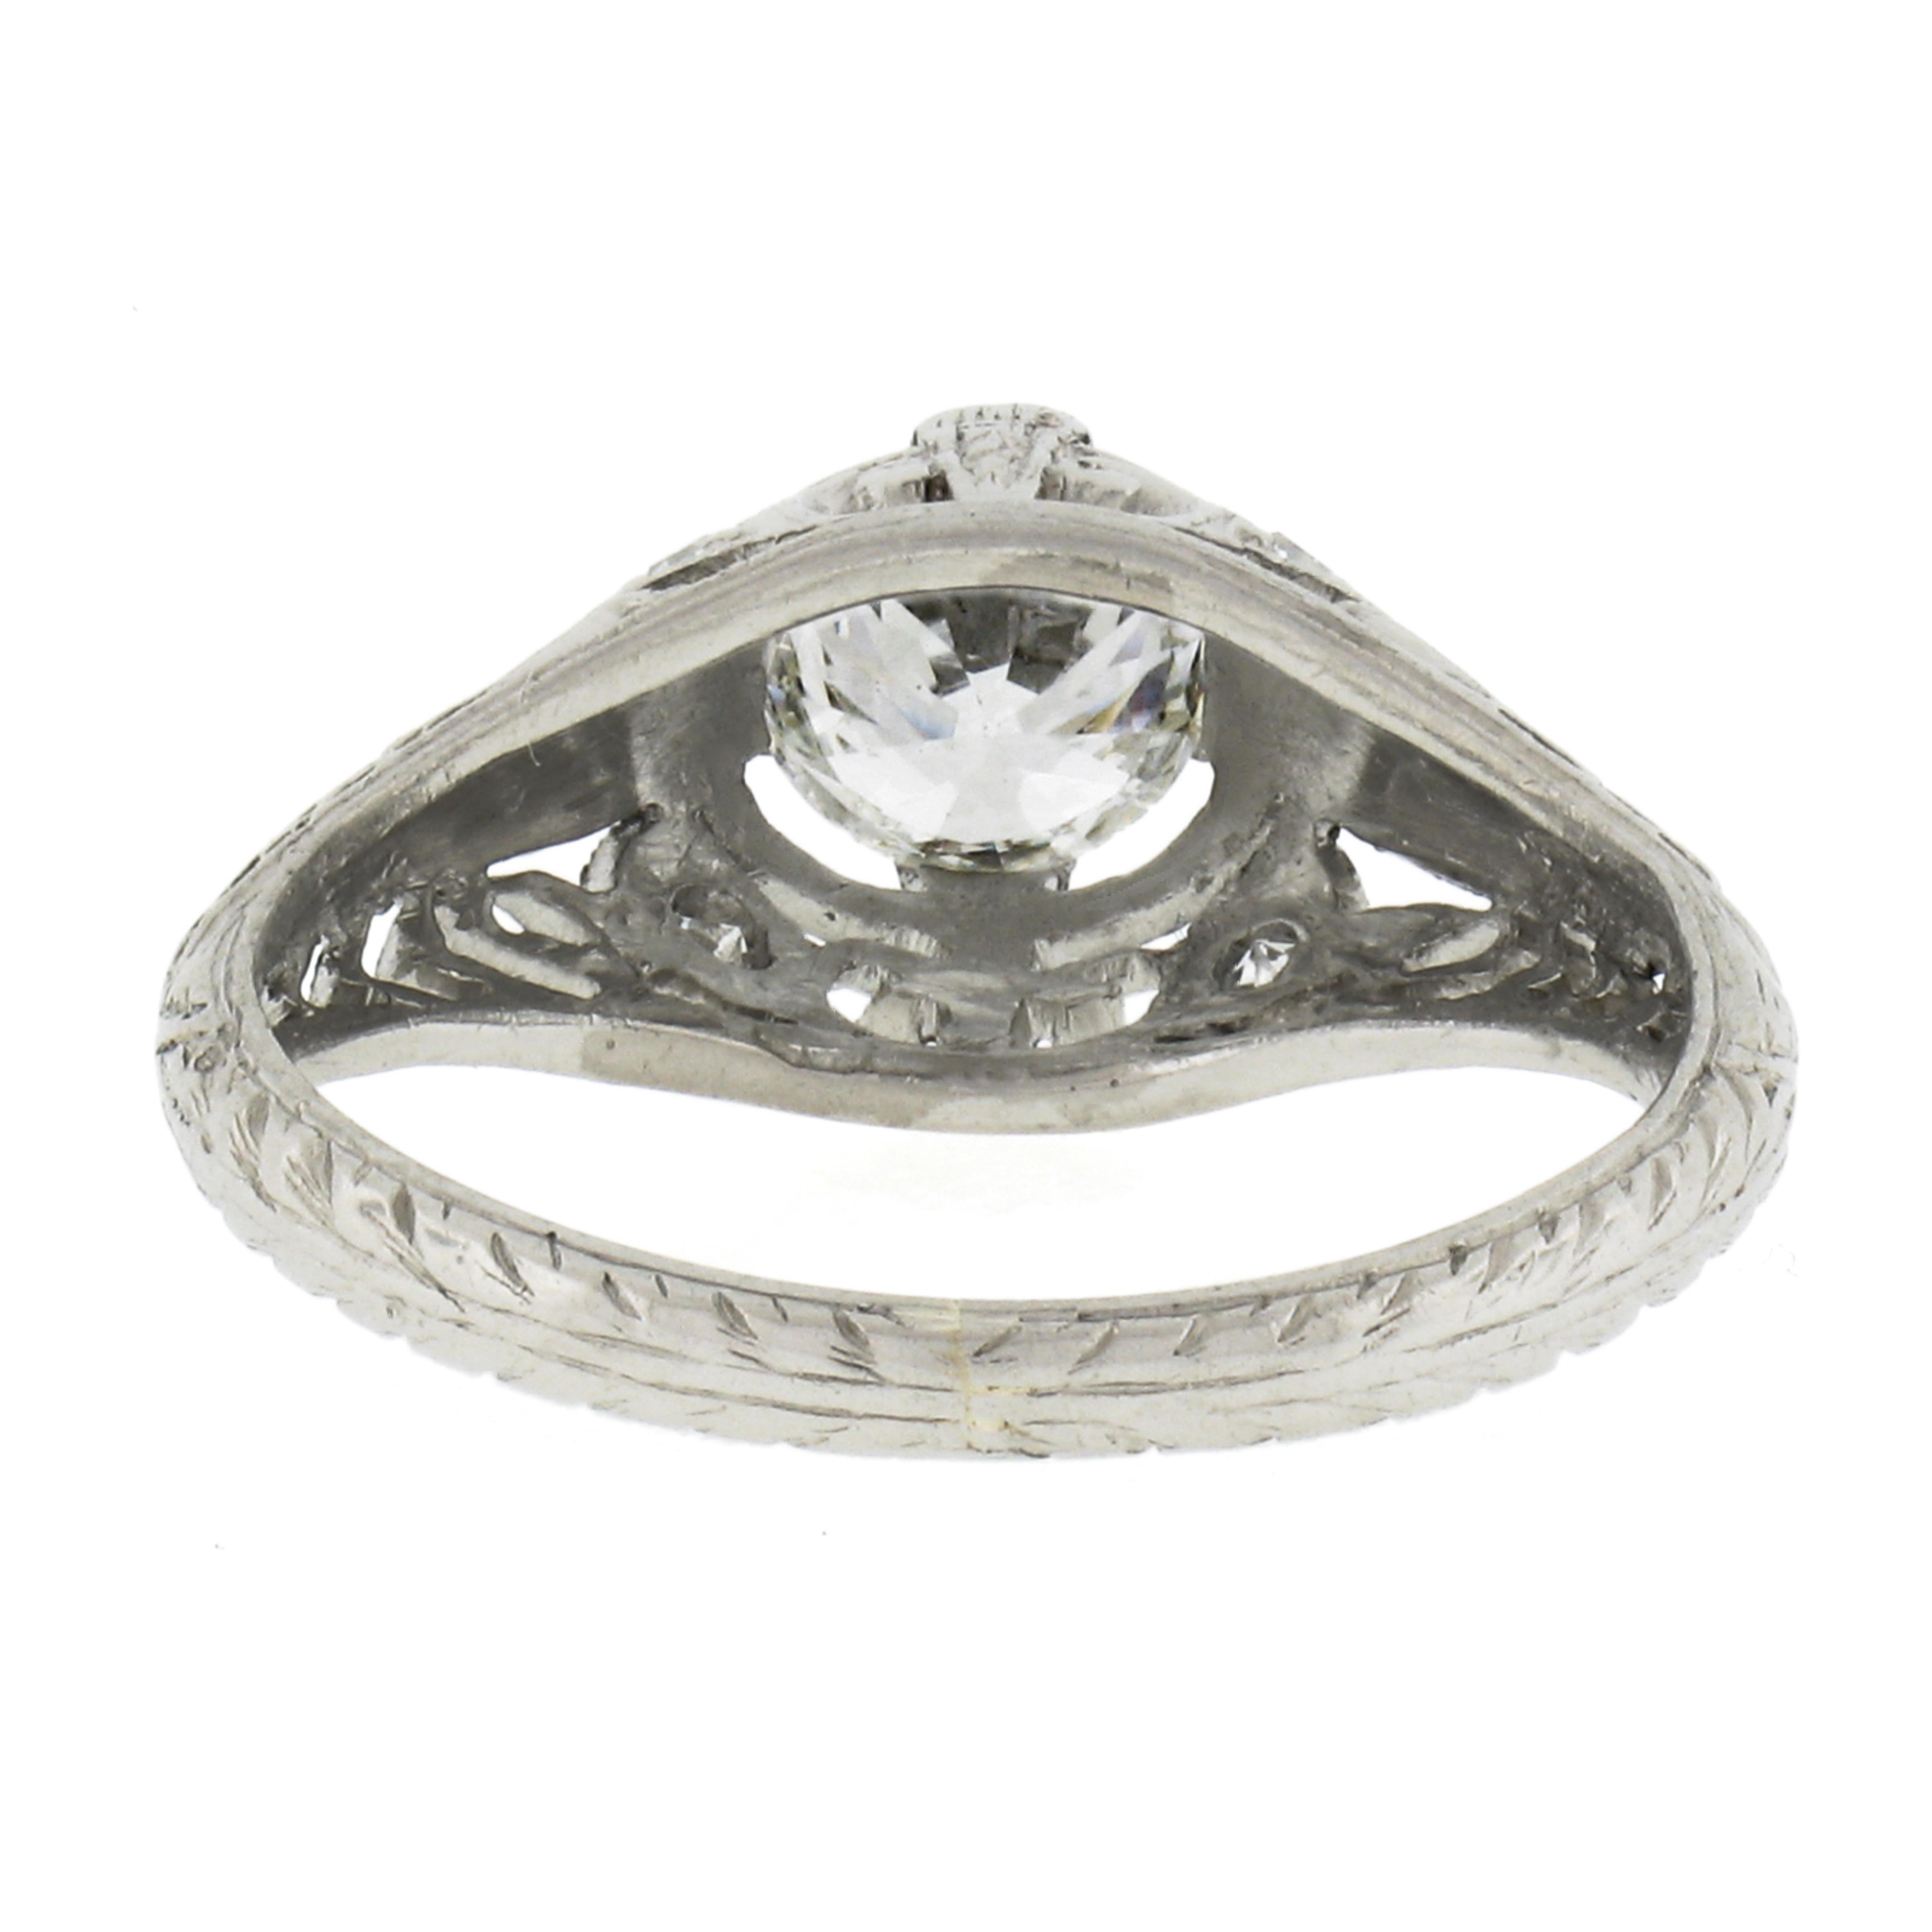 Antique Edwardian Platinum European Diamond Solitaire Filigree Engagement Ring 2